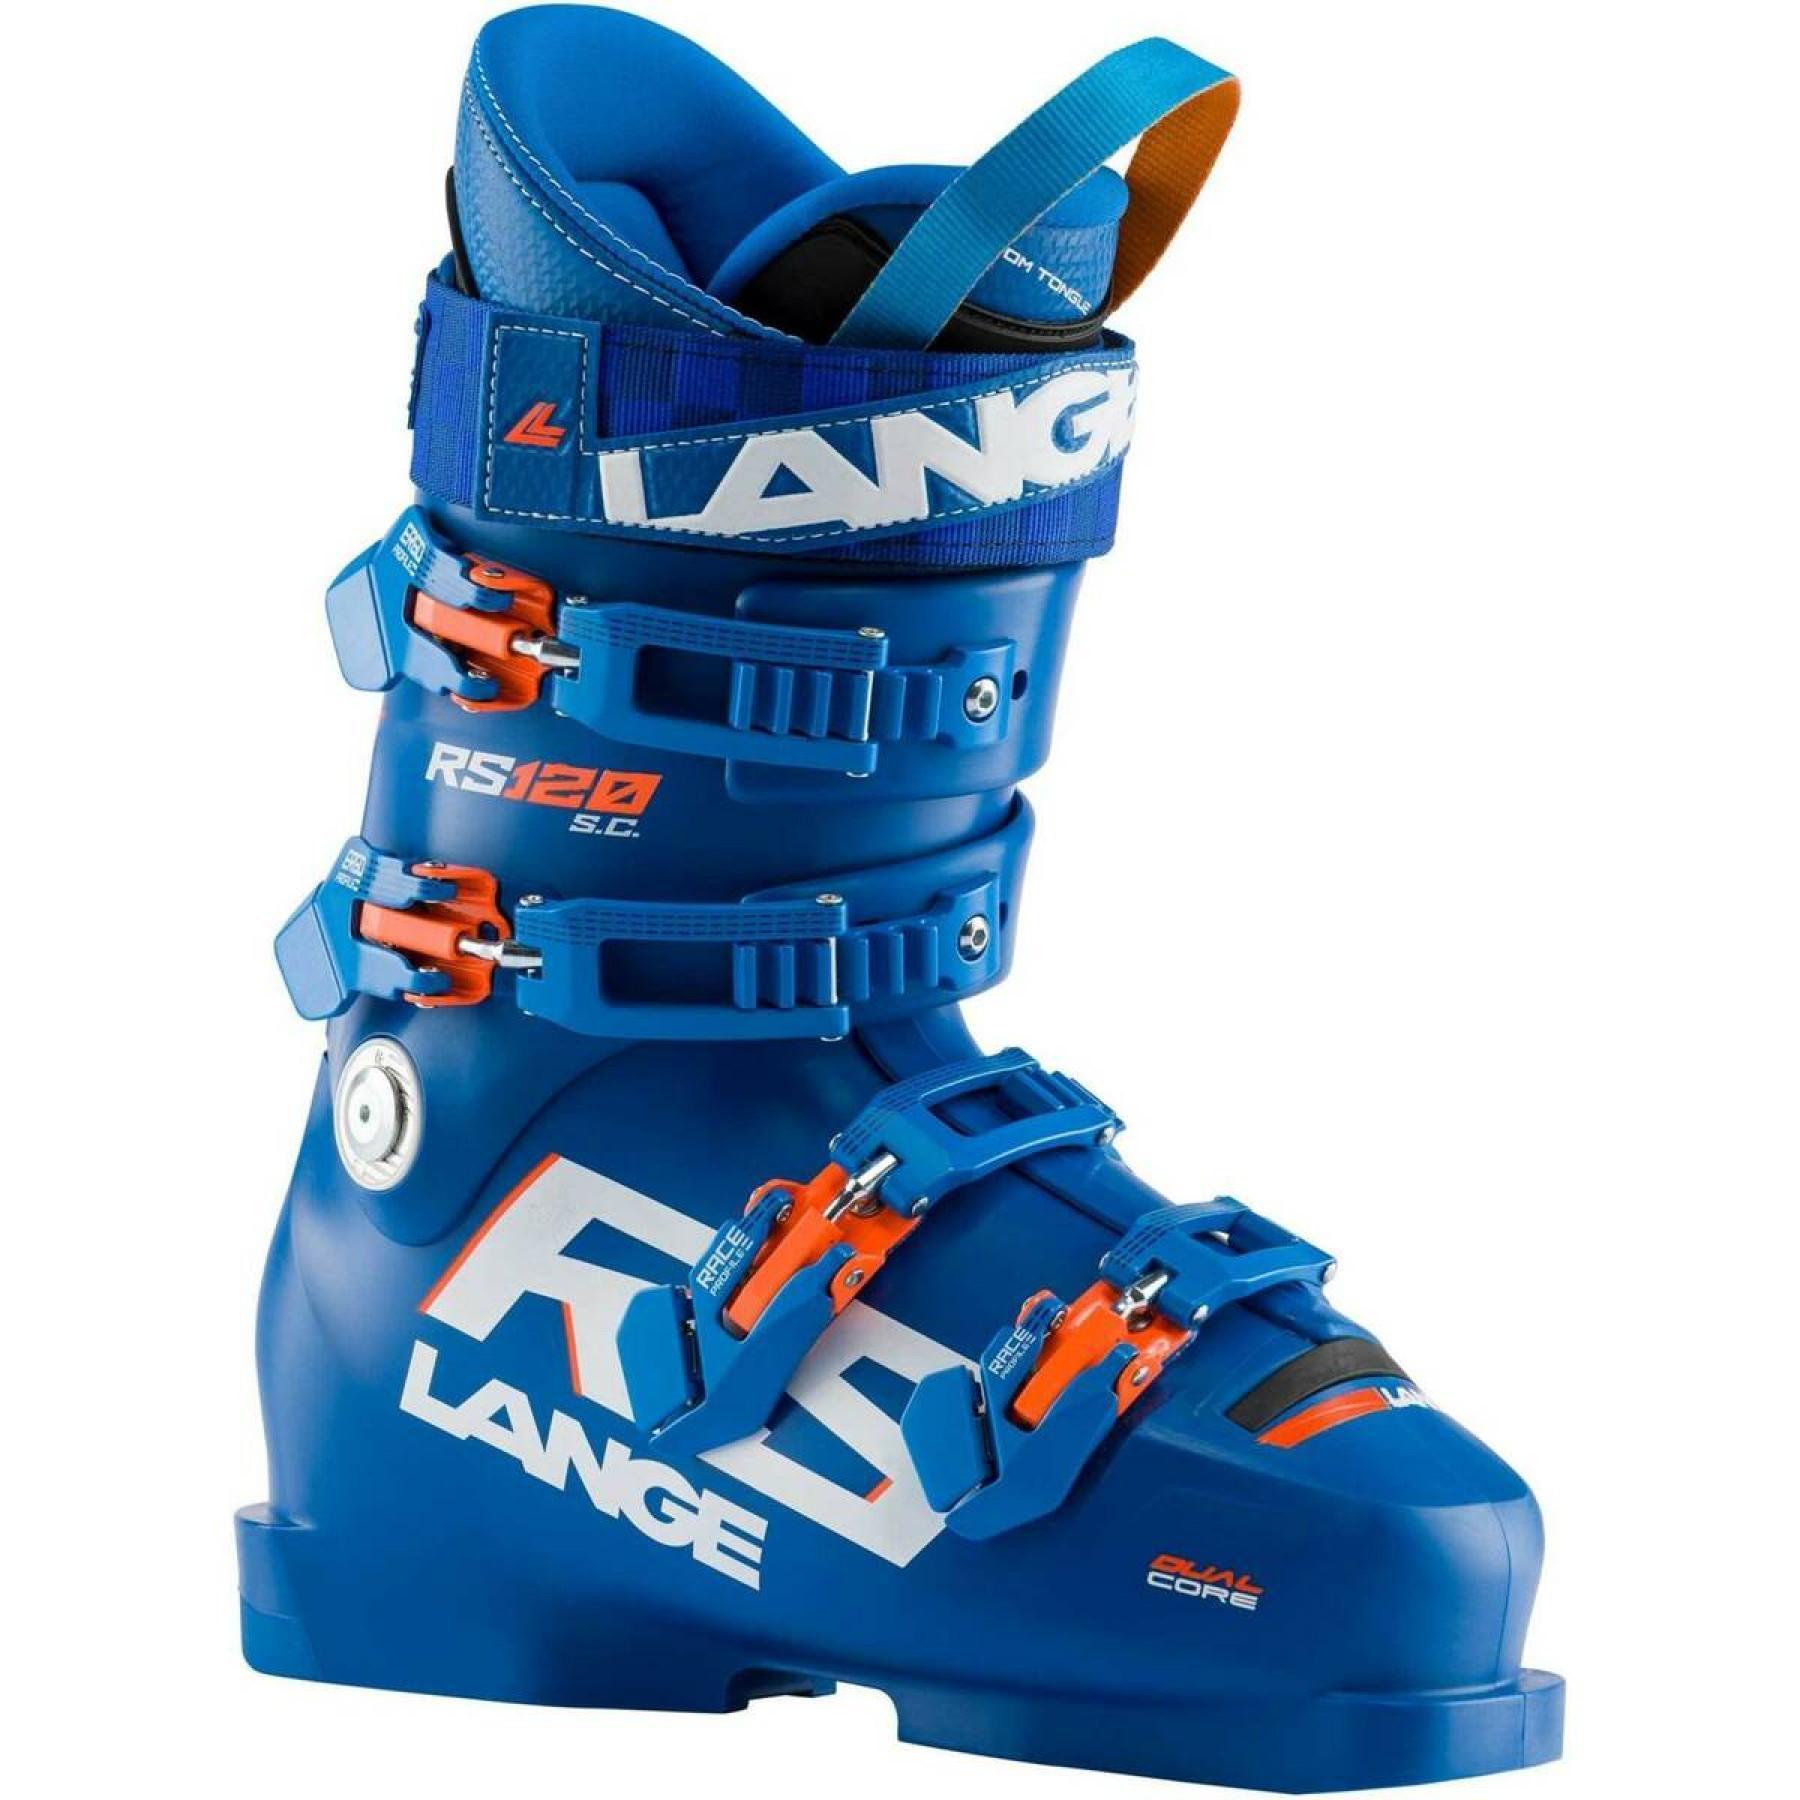 Calçado de esqui criança Lange rs 120 s.c.